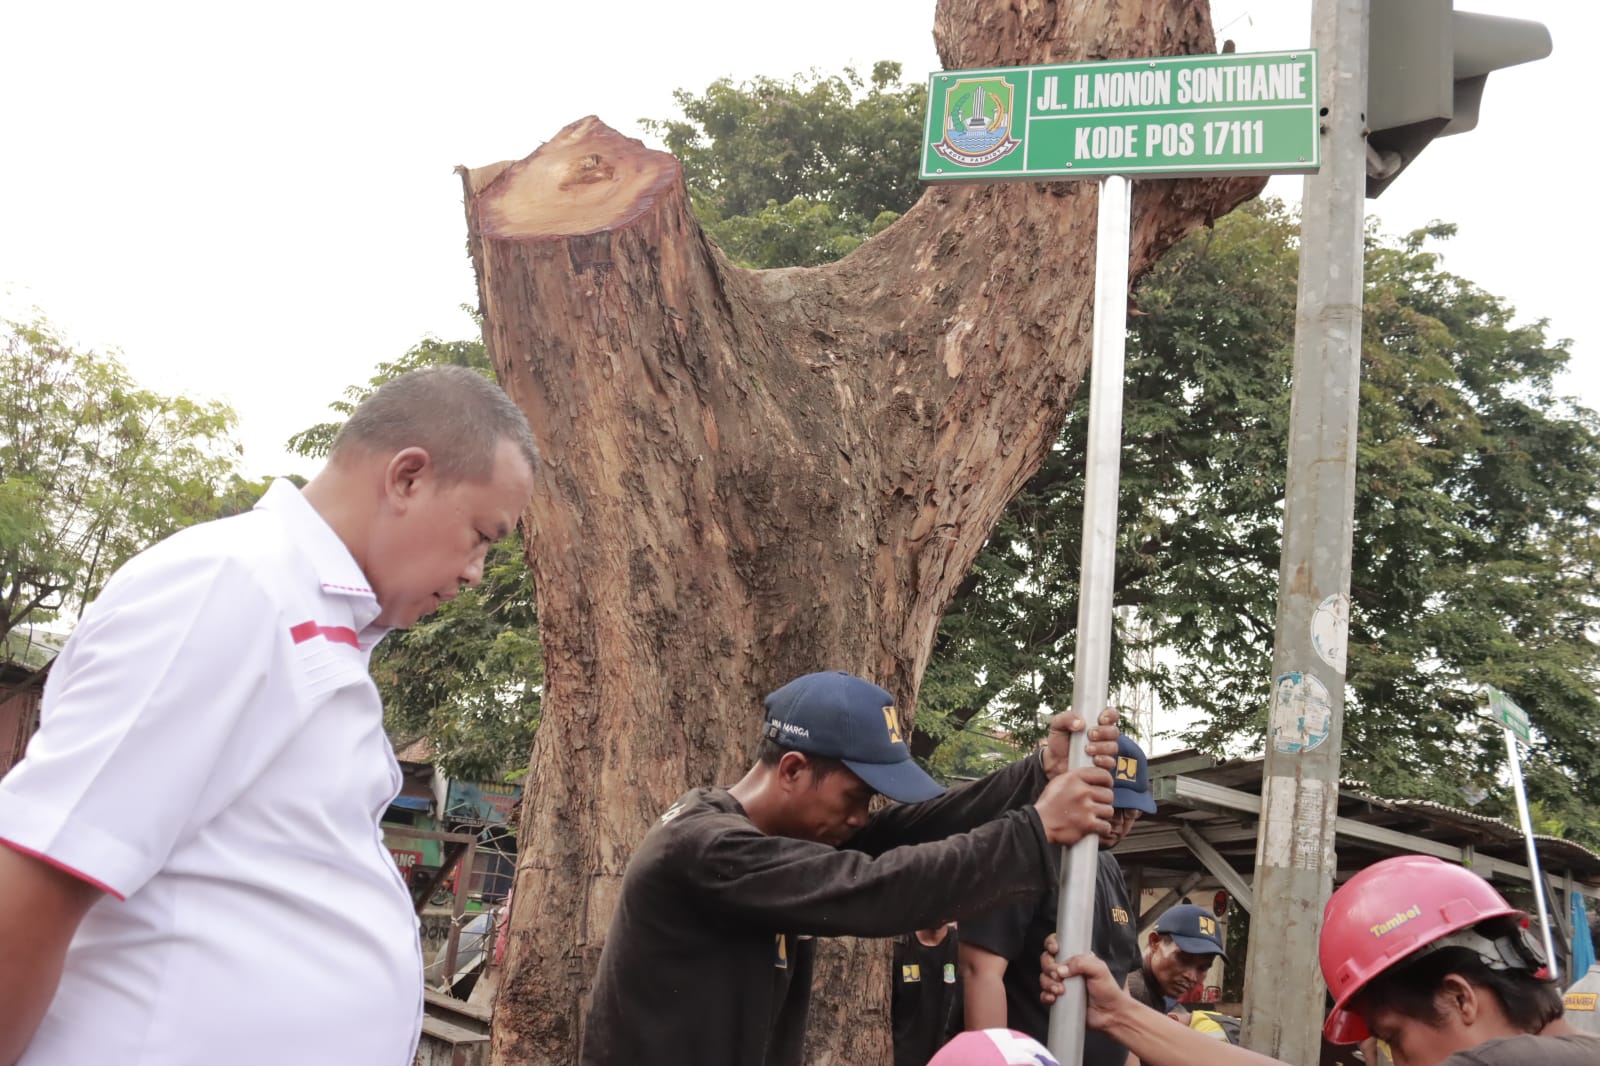 Pemerintah Kota Bekasi Ubah Nama Jl. Baru Underpas Menjadi Jl. H. Nonon Sonthanie